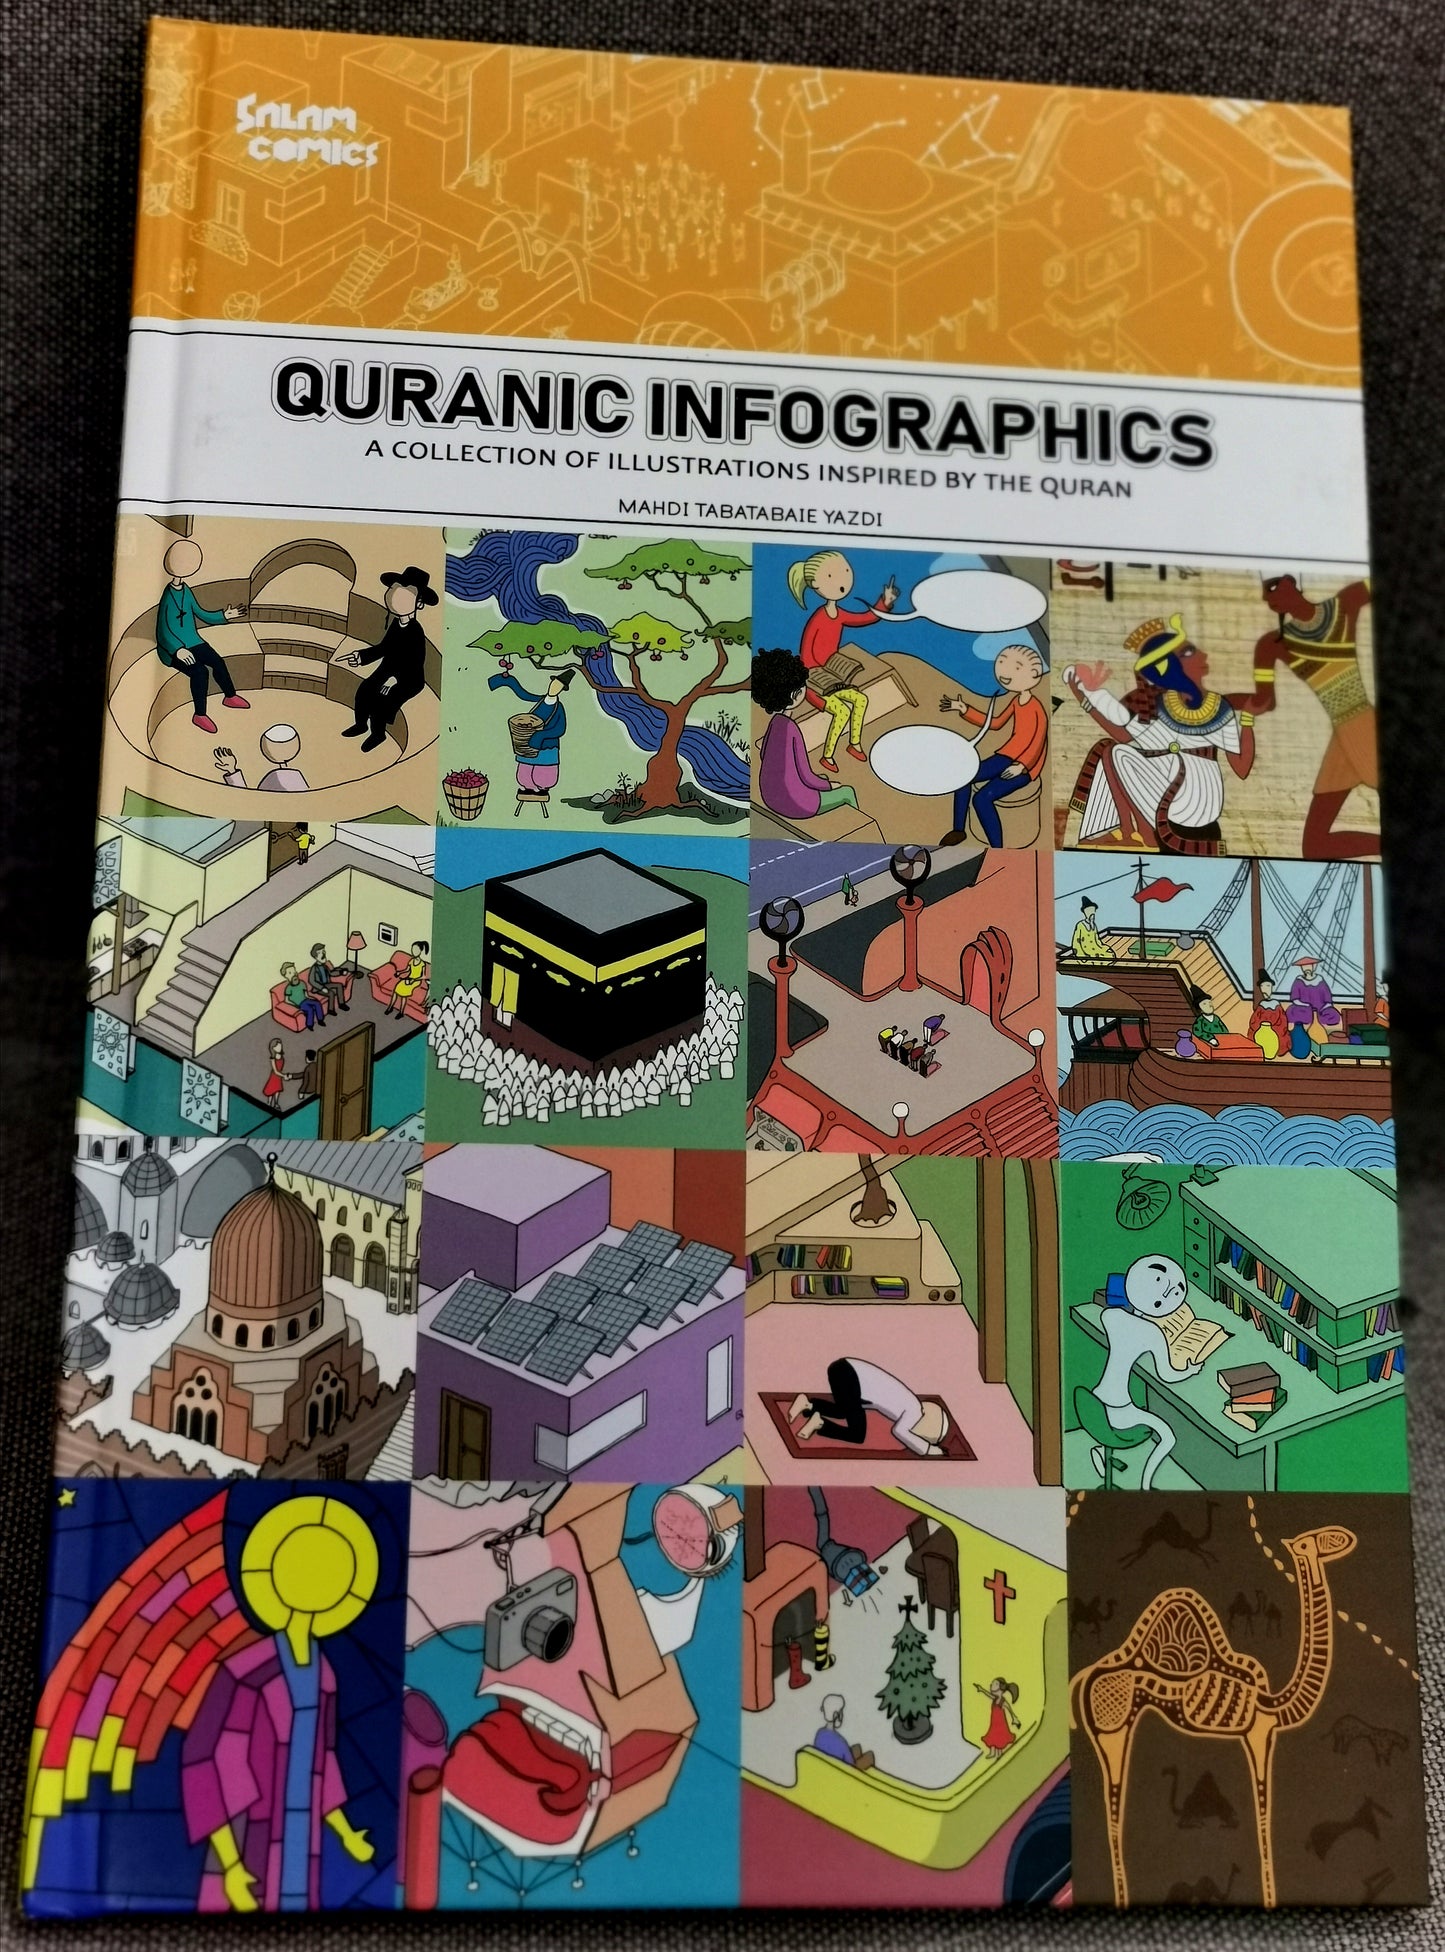 Quranic Infographics